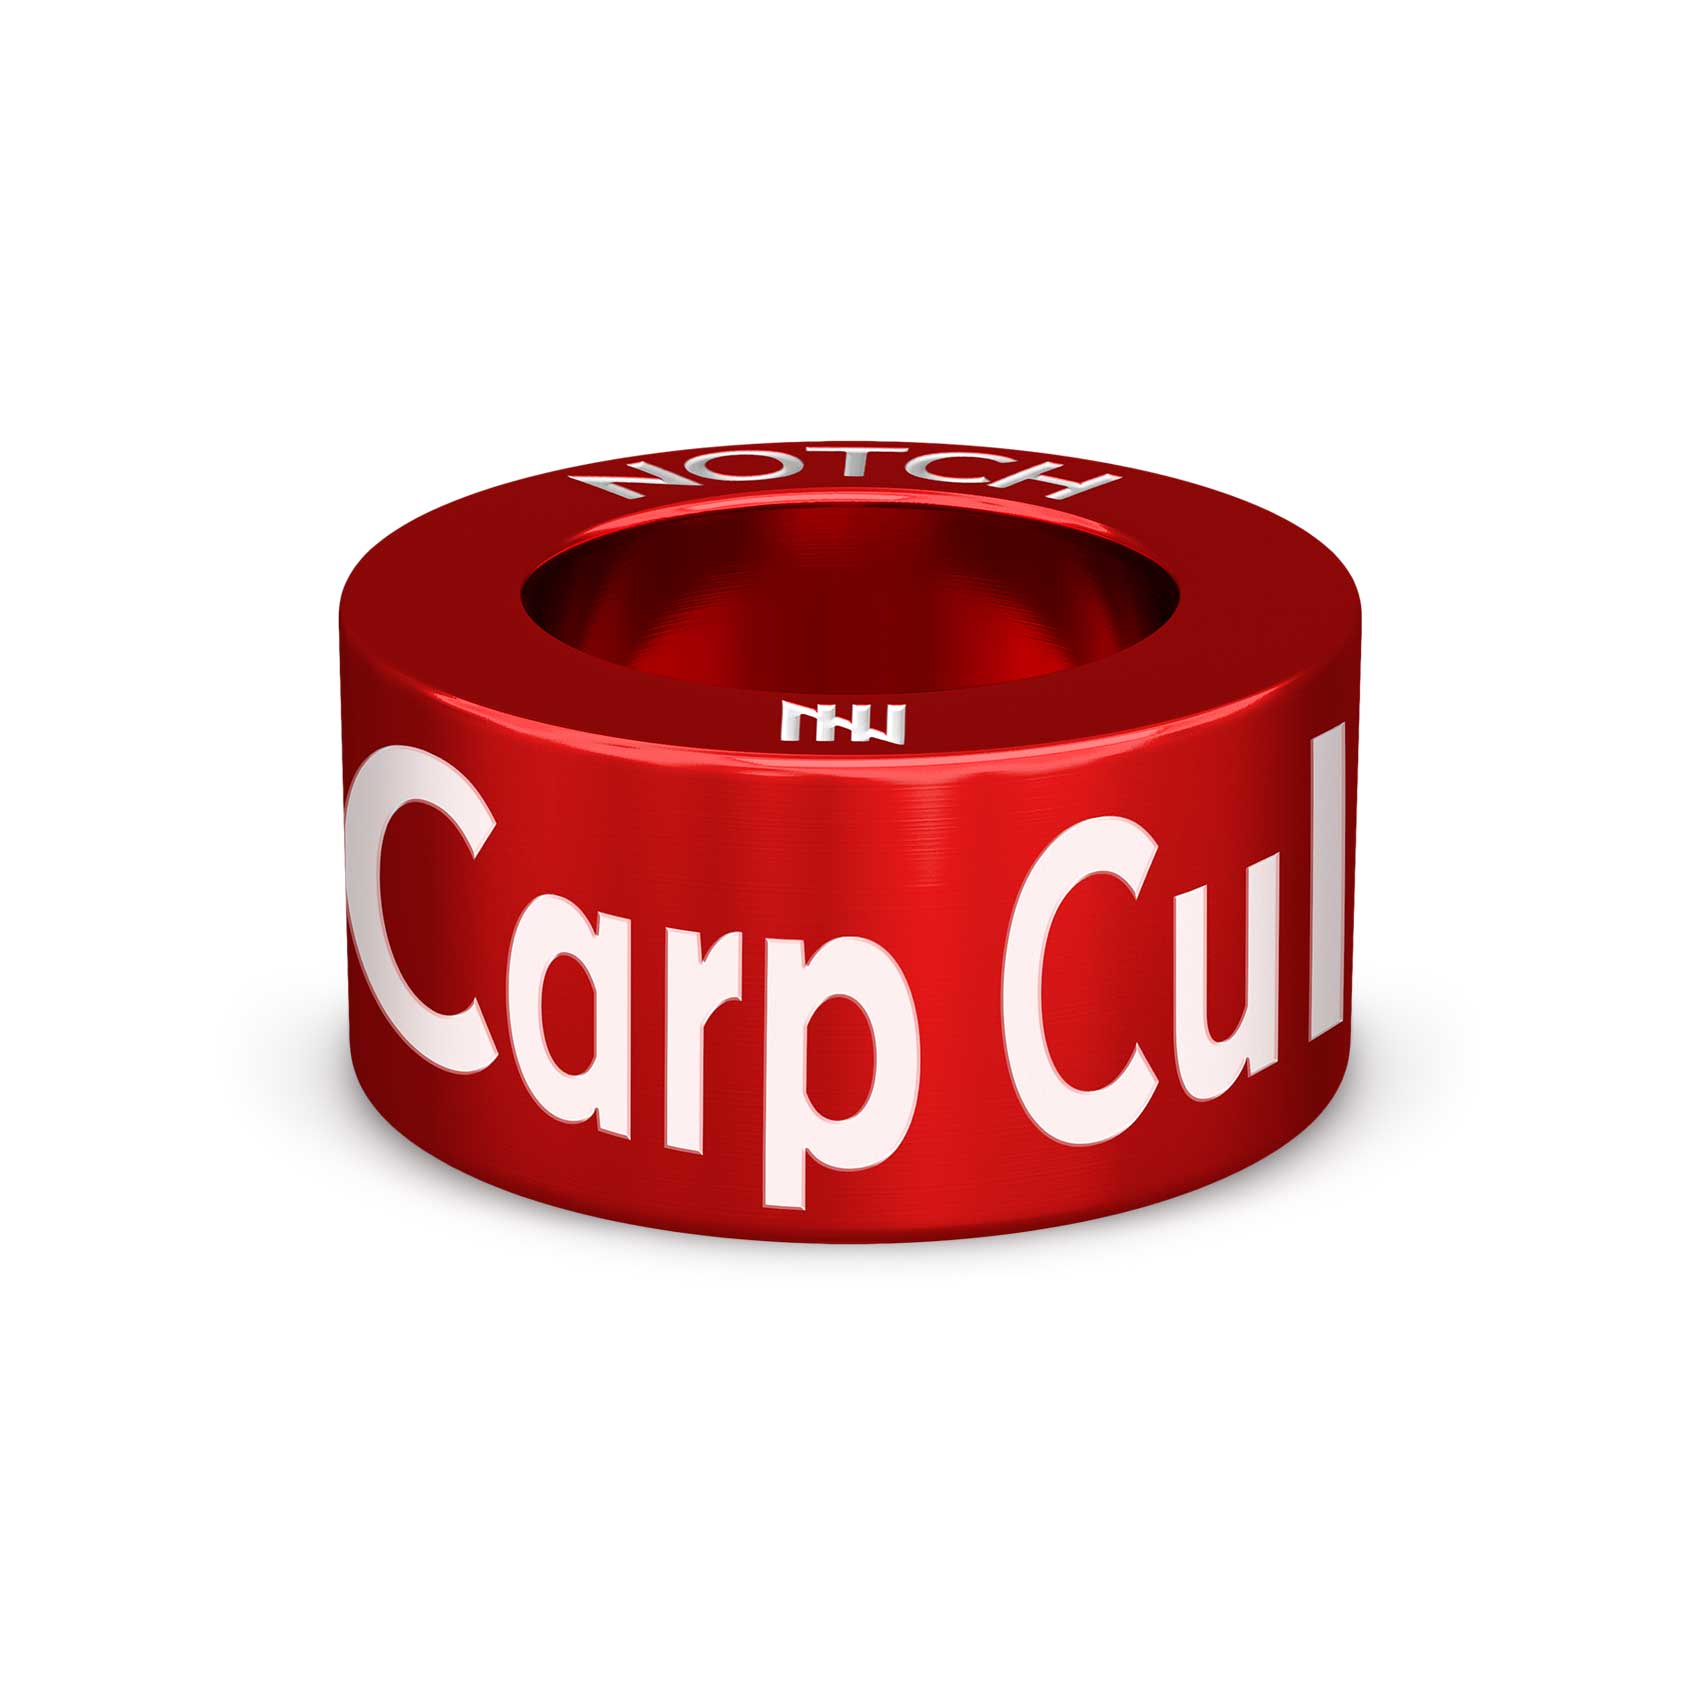 Carp Culture NOTCH Charm (Full List)